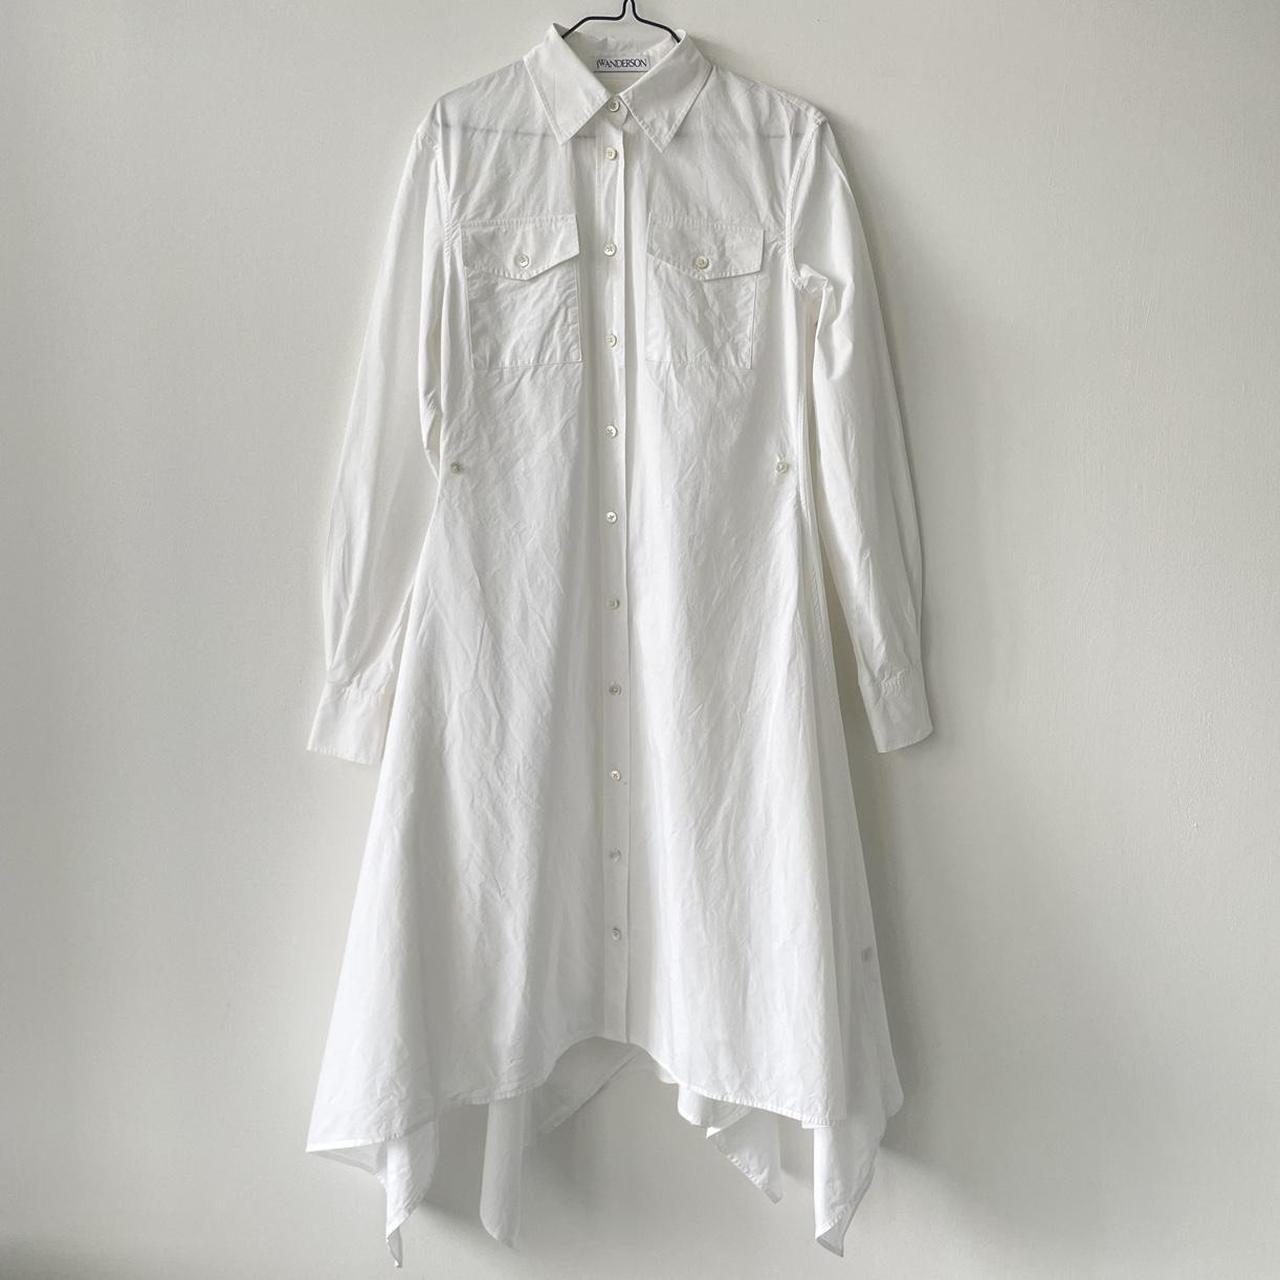 JW ANDERSON A-LINE SHIRT DRESS ***BELT... - Depop